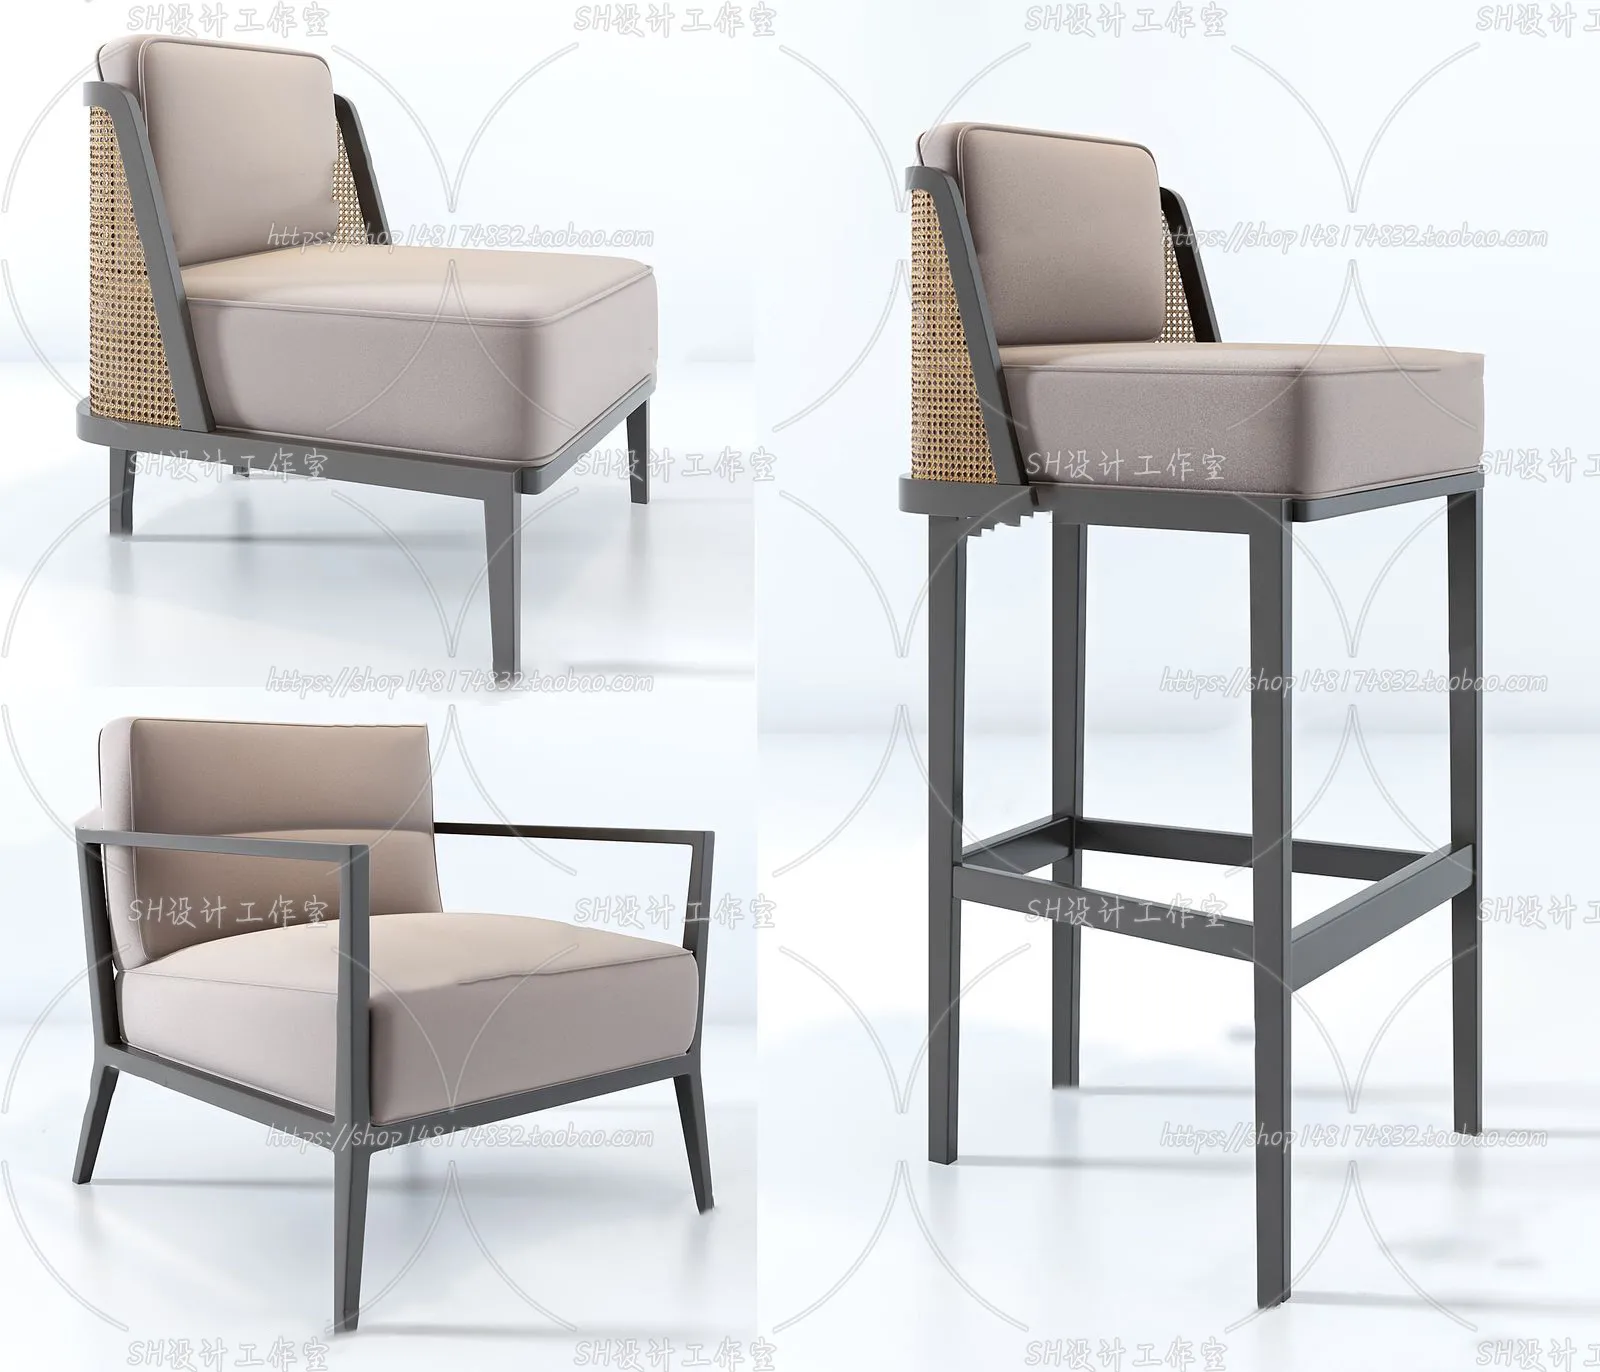 Chair – Single Chair 3D Models – 2011